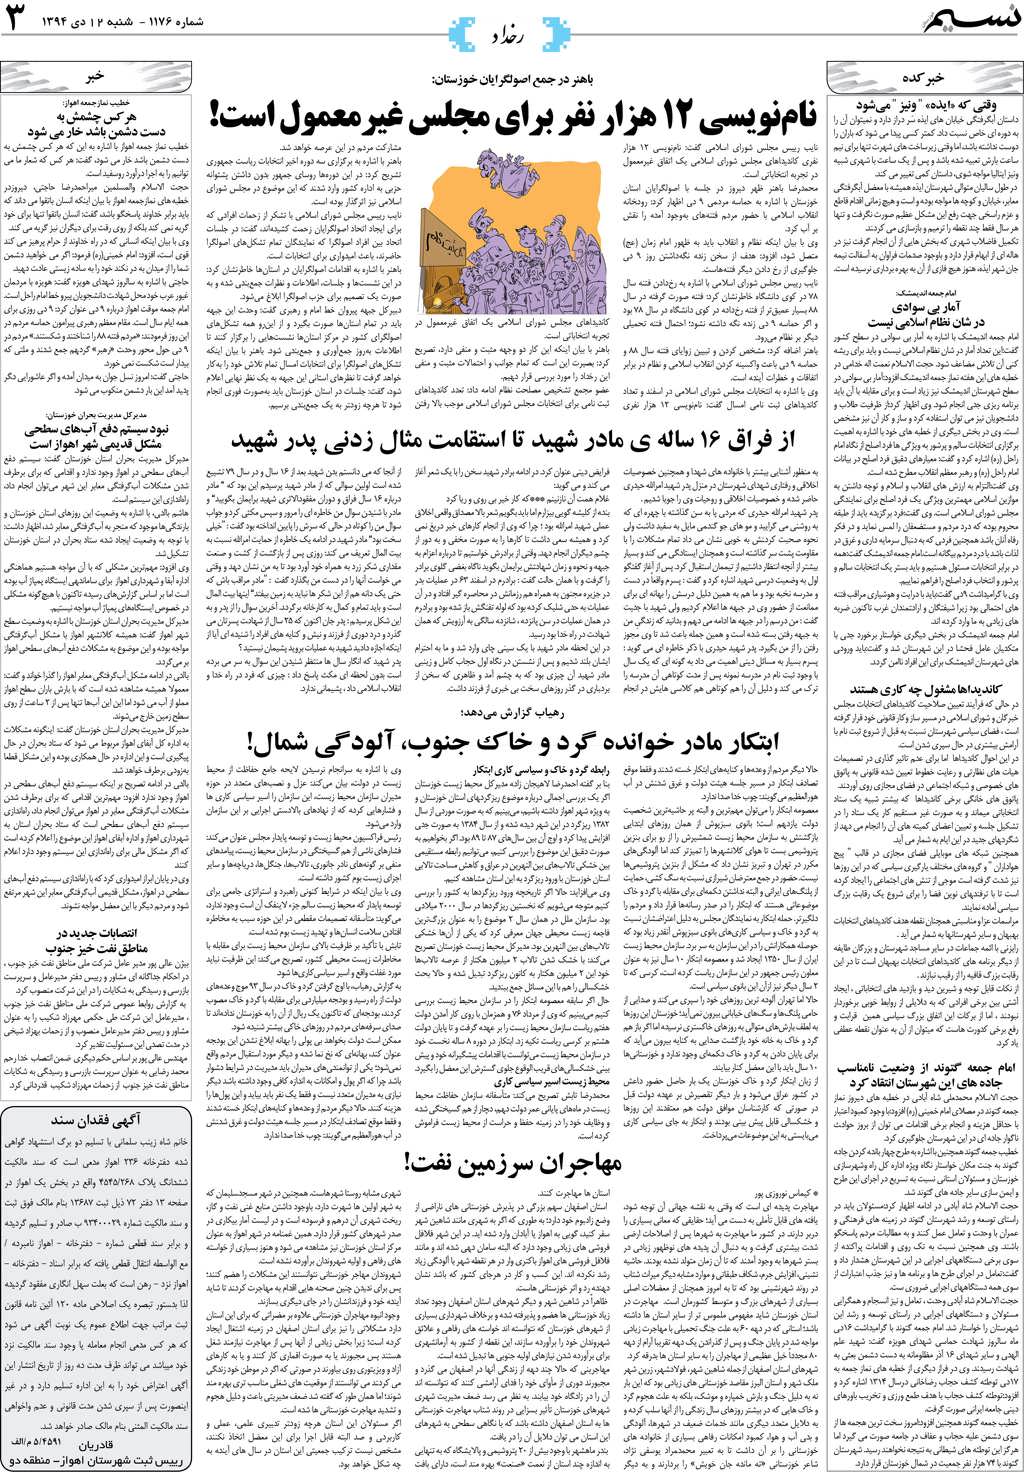 صفحه رخداد روزنامه نسیم شماره 1176